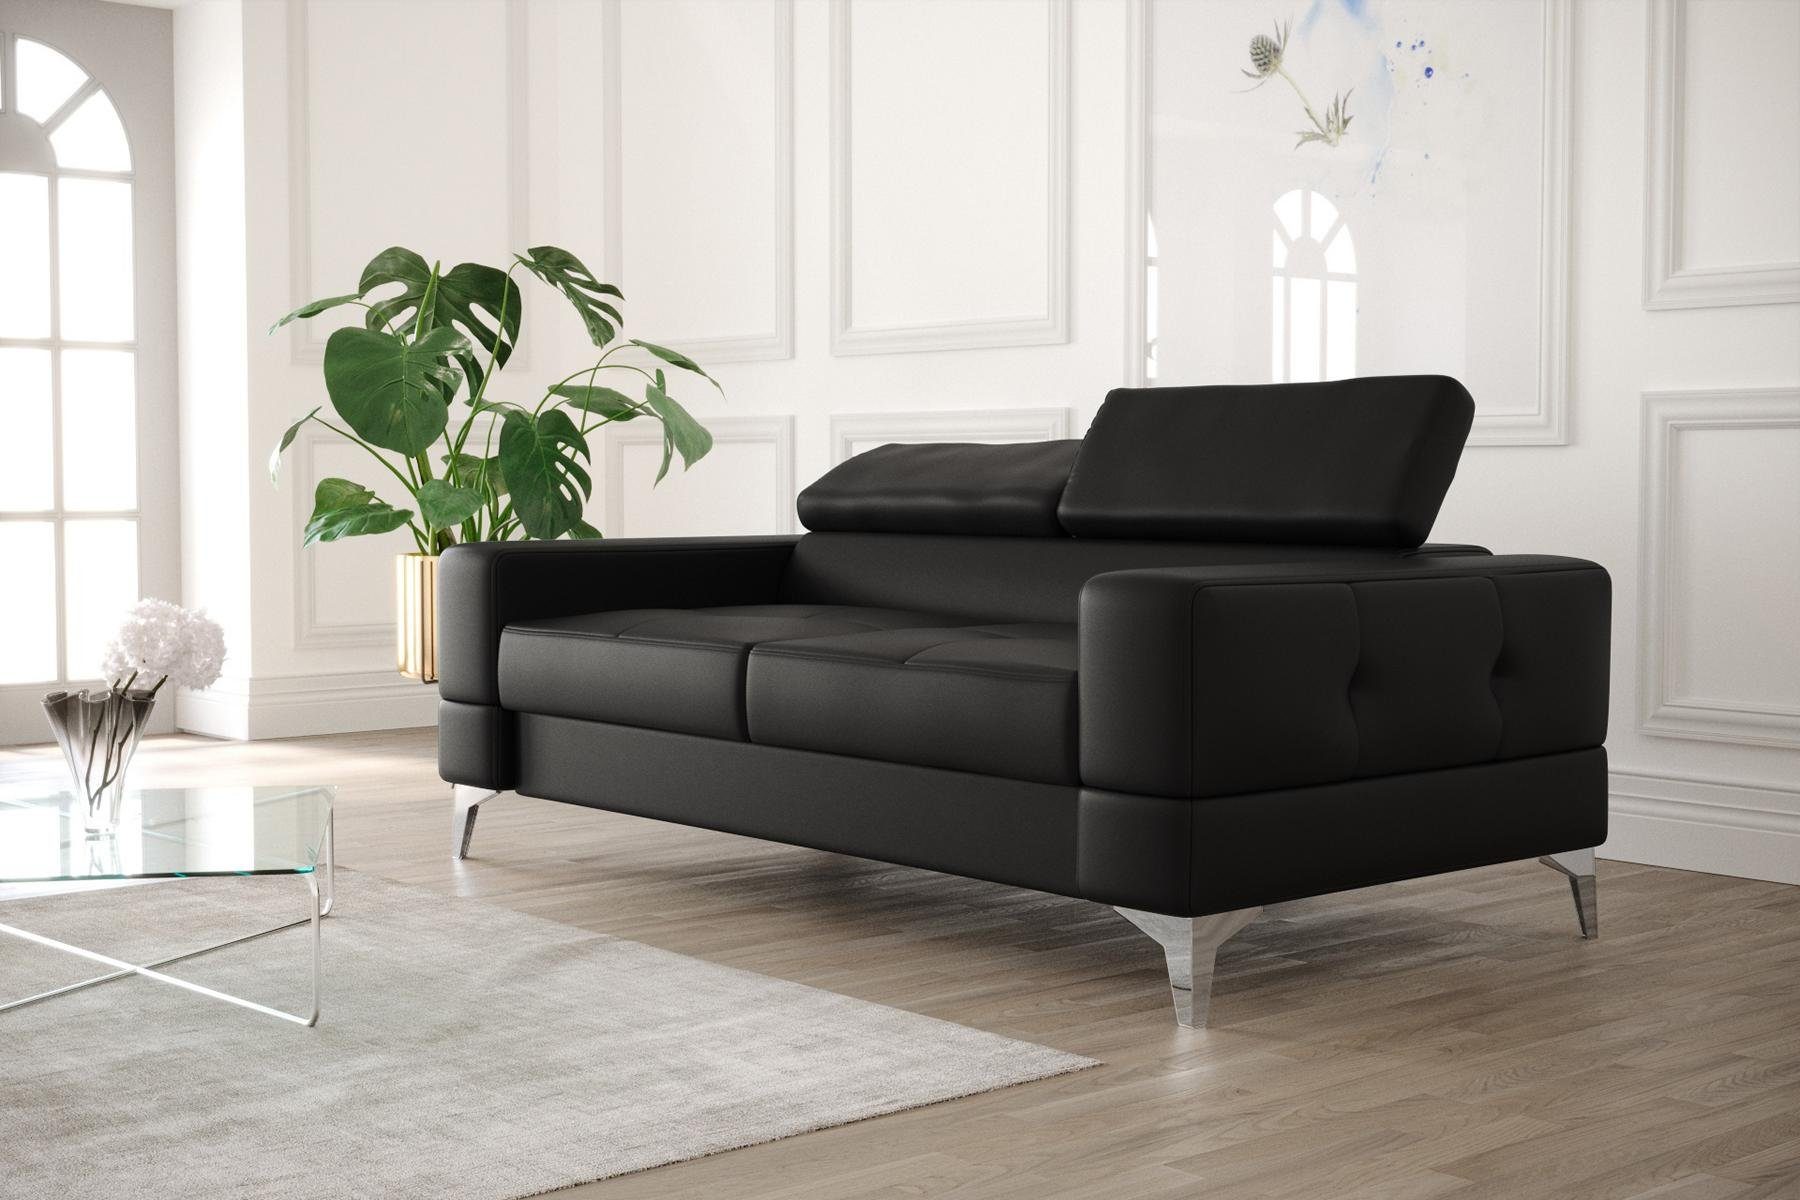 JVmoebel Zweisitzer Made Sofa Sitzmöbel, Couch Europe Schwarzer Moderne in Wohnzimmer Luxus